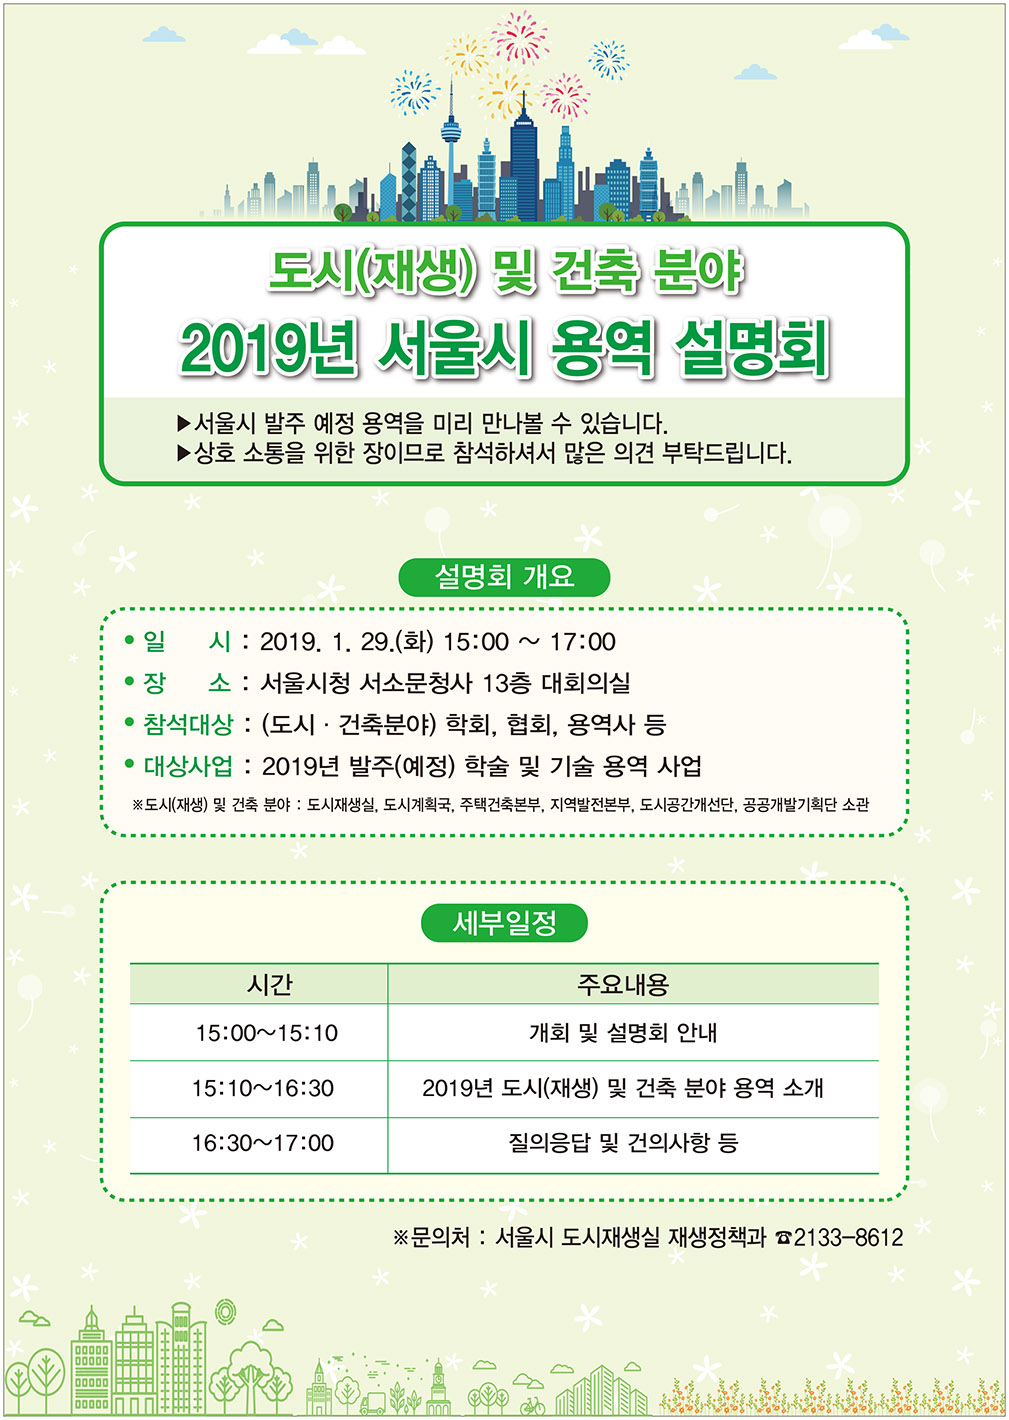 2019년 서울시 용역 설명회 개최